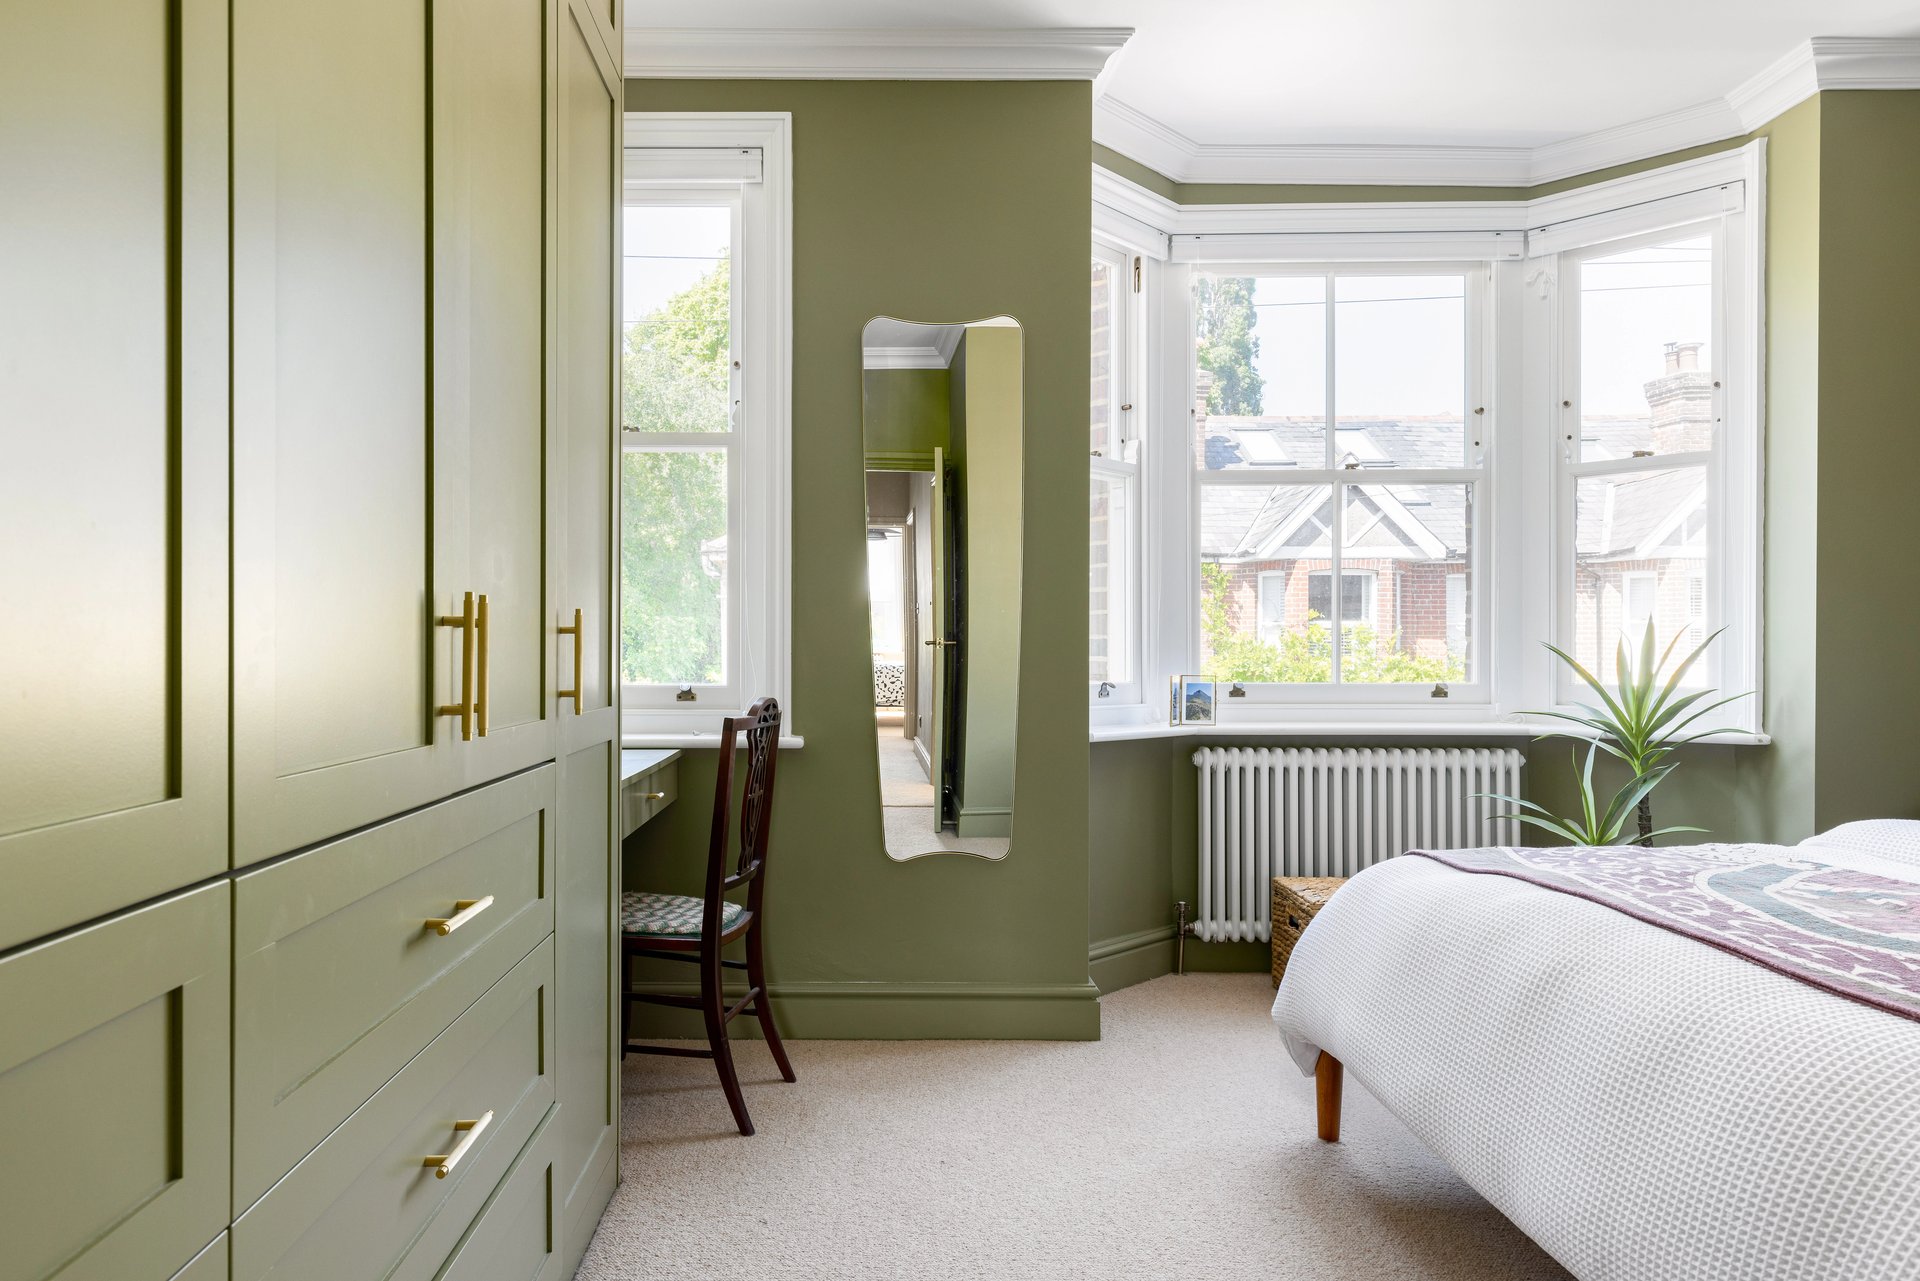 Modern wardrobe in green bedroom